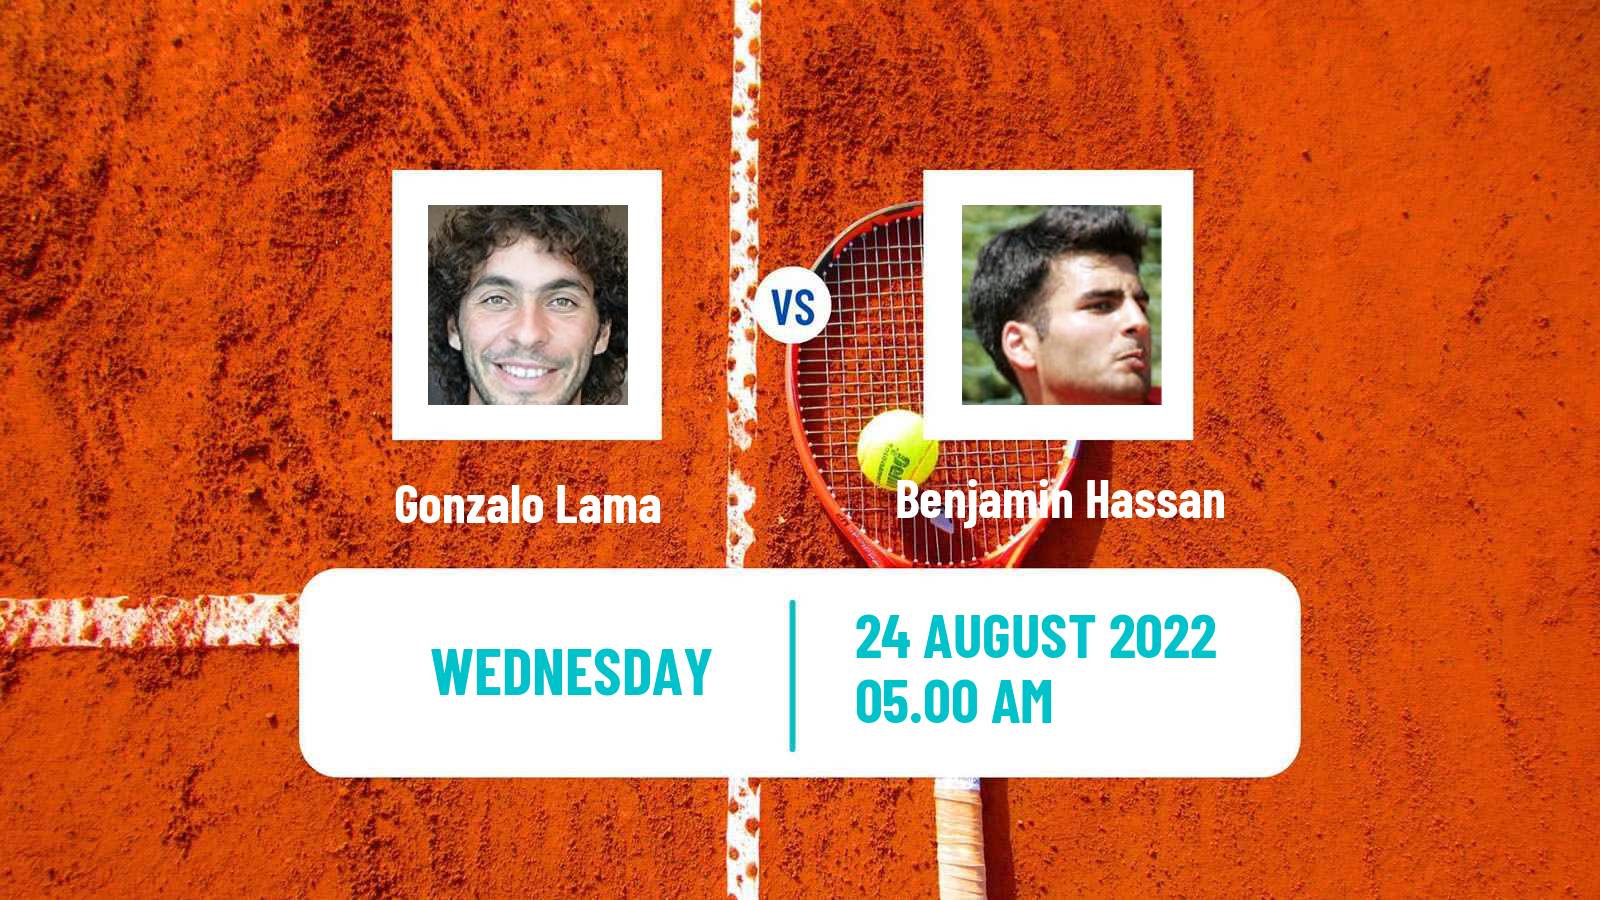 Tennis ATP Challenger Gonzalo Lama - Benjamin Hassan